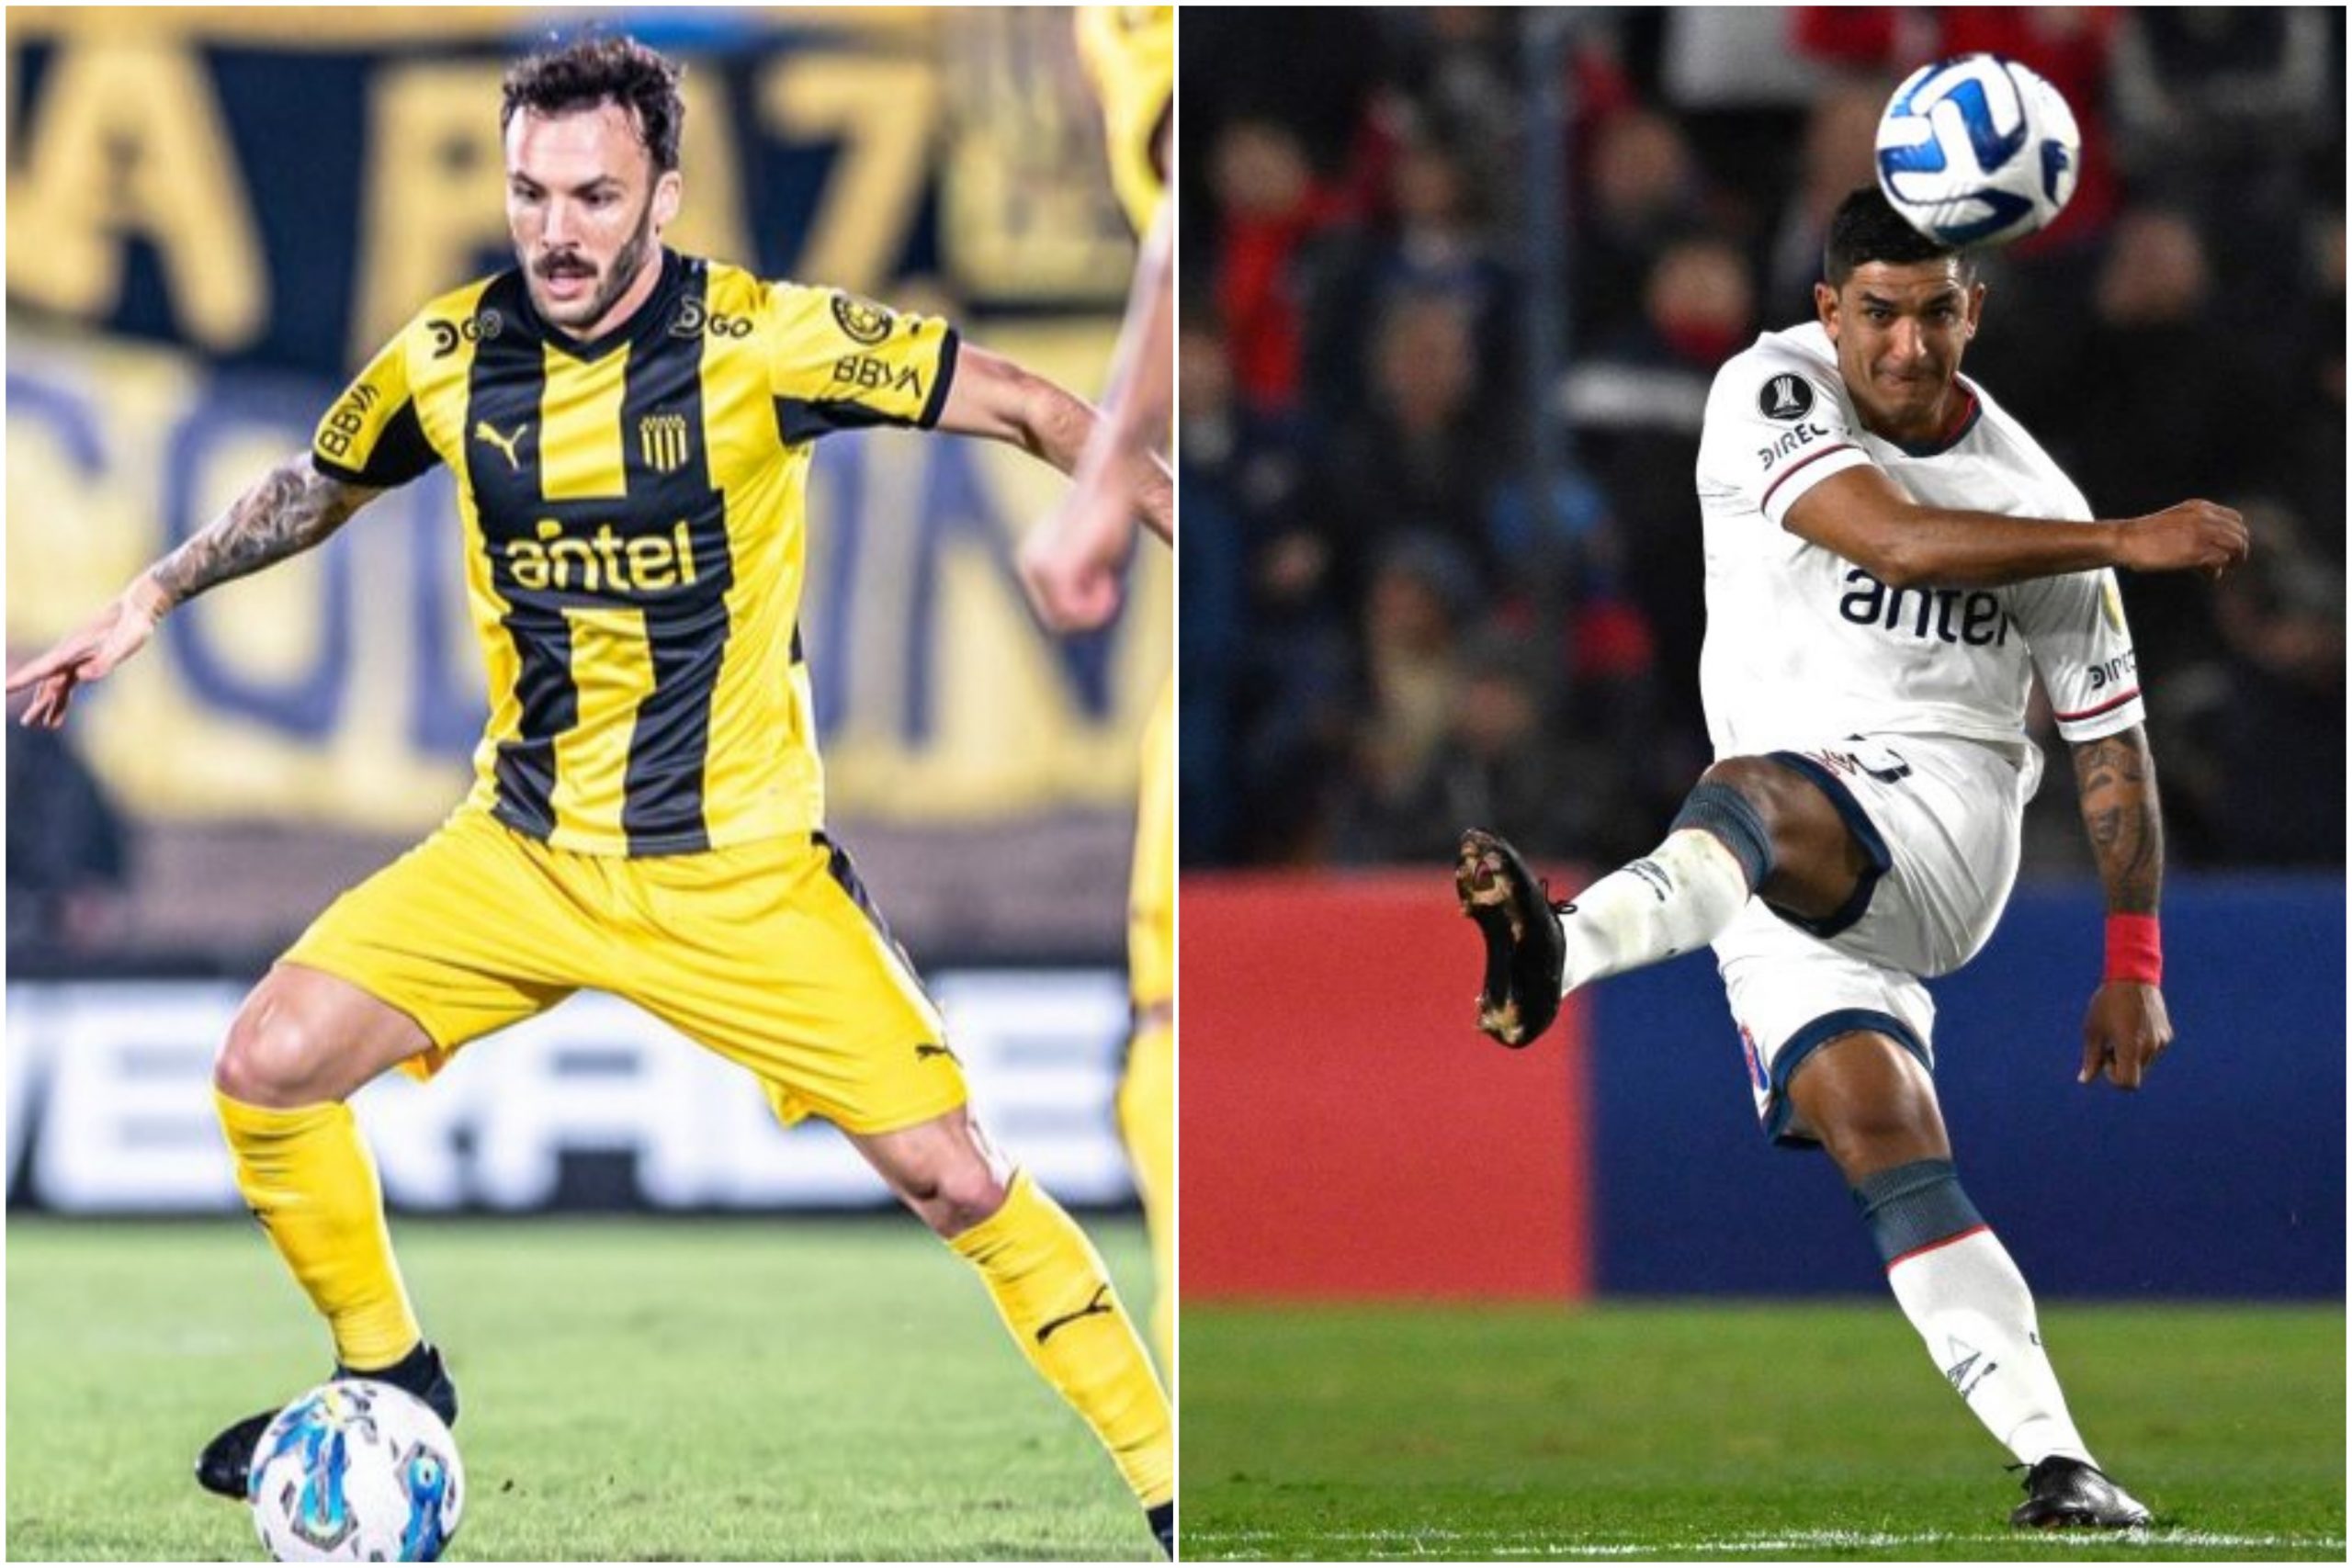 Clausura: dos fechas que pueden marcar el futuro de Peñarol y Nacional